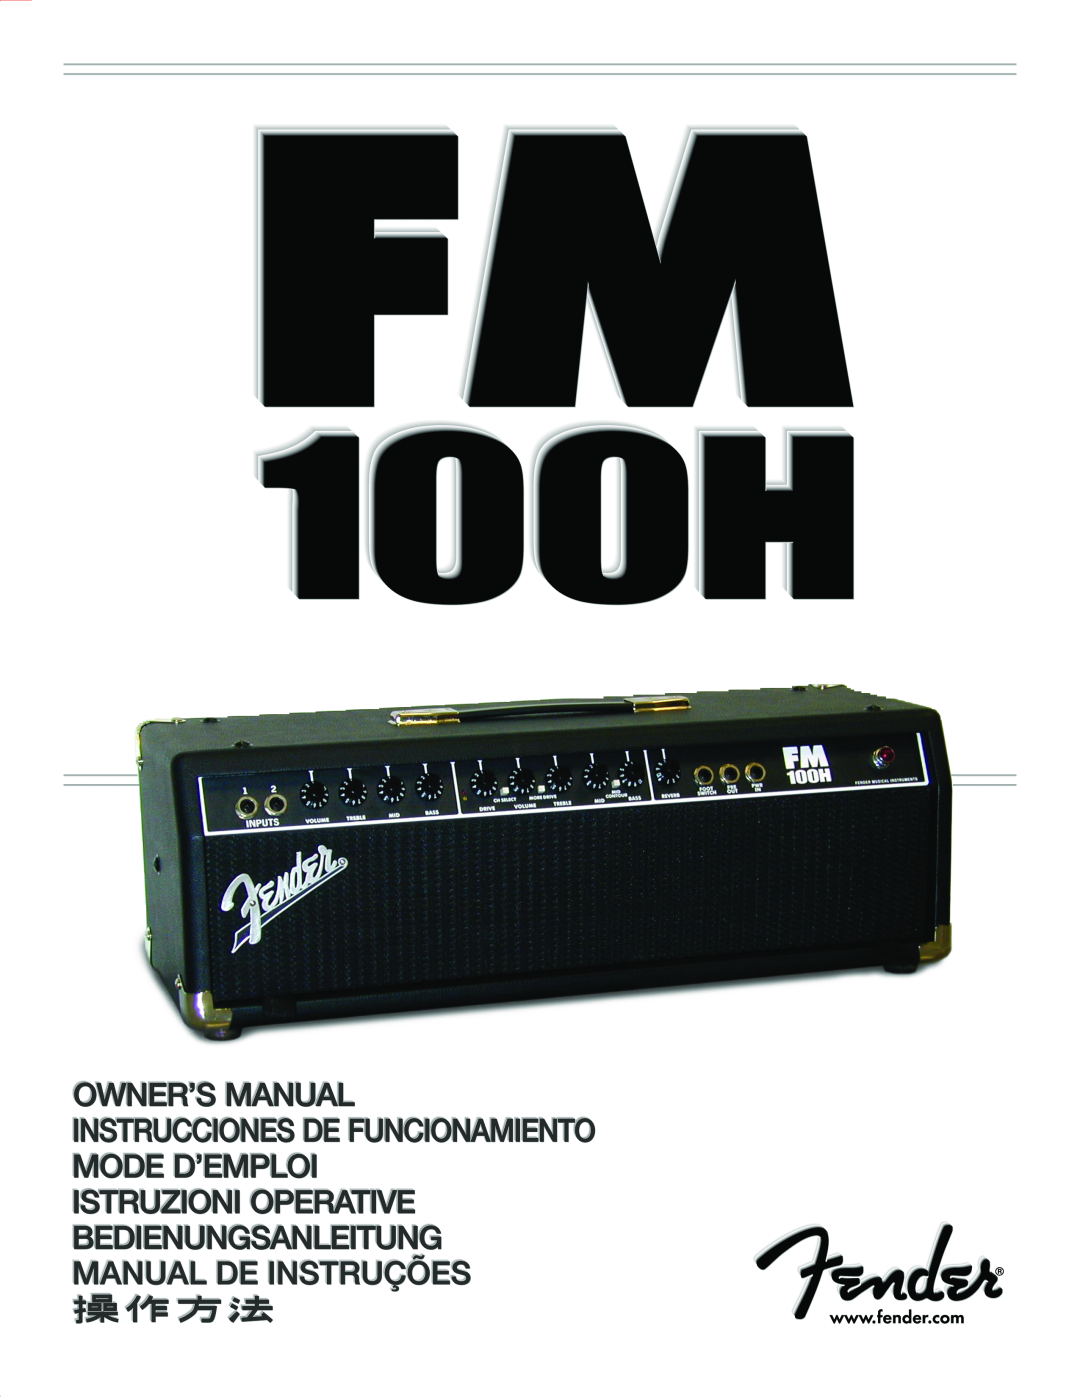 Fender 100H manual 